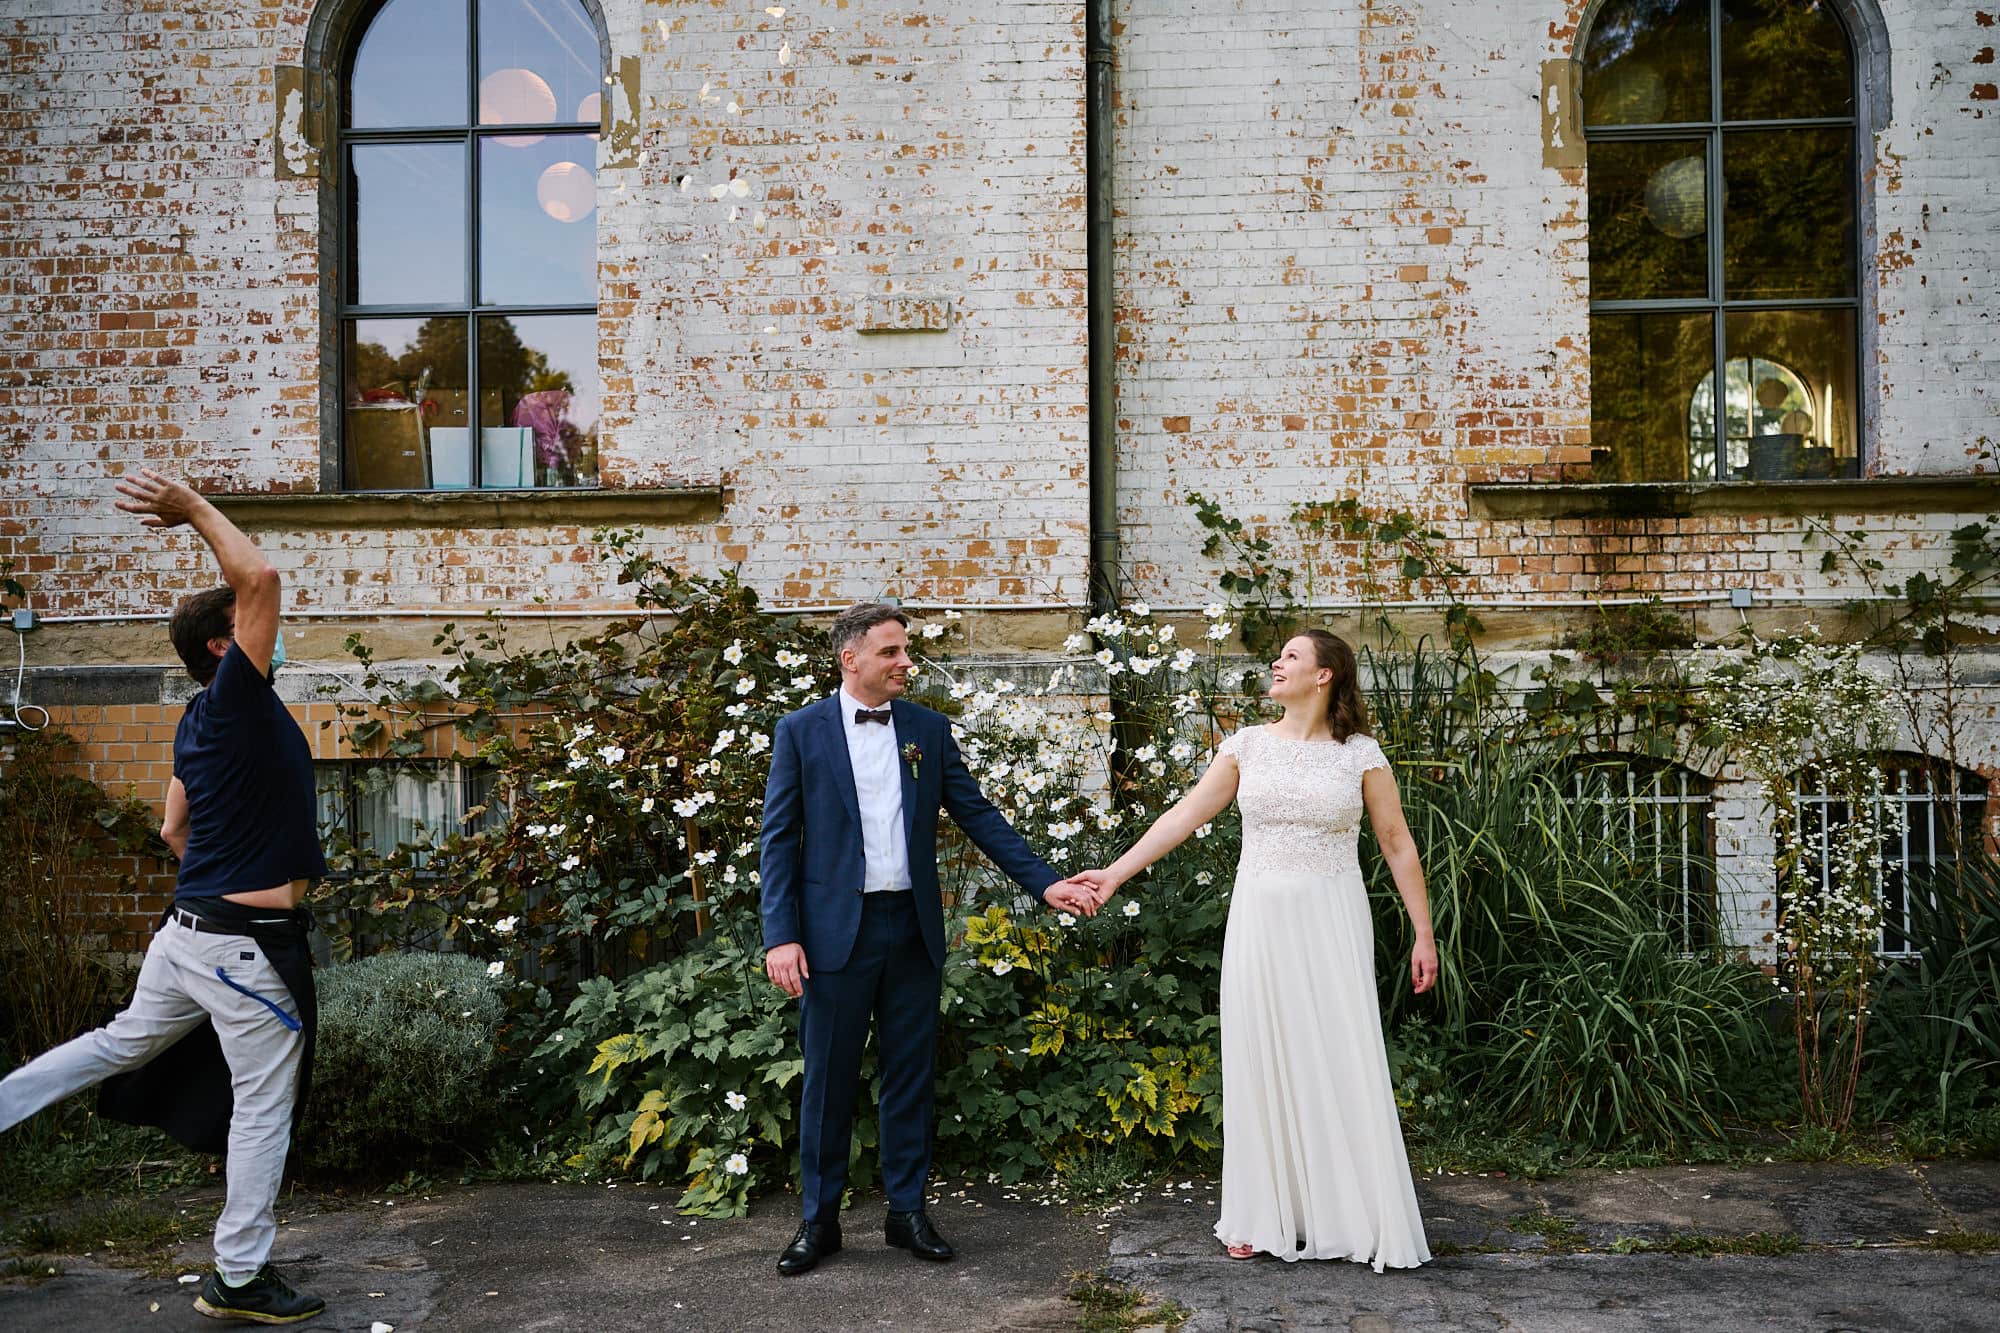 Der Hochzeitsfotograf fängt einen offenen Moment ein, in dem ein fröhliches Brautpaar Händchen haltend vor einer rustikalen Backsteinmauer.